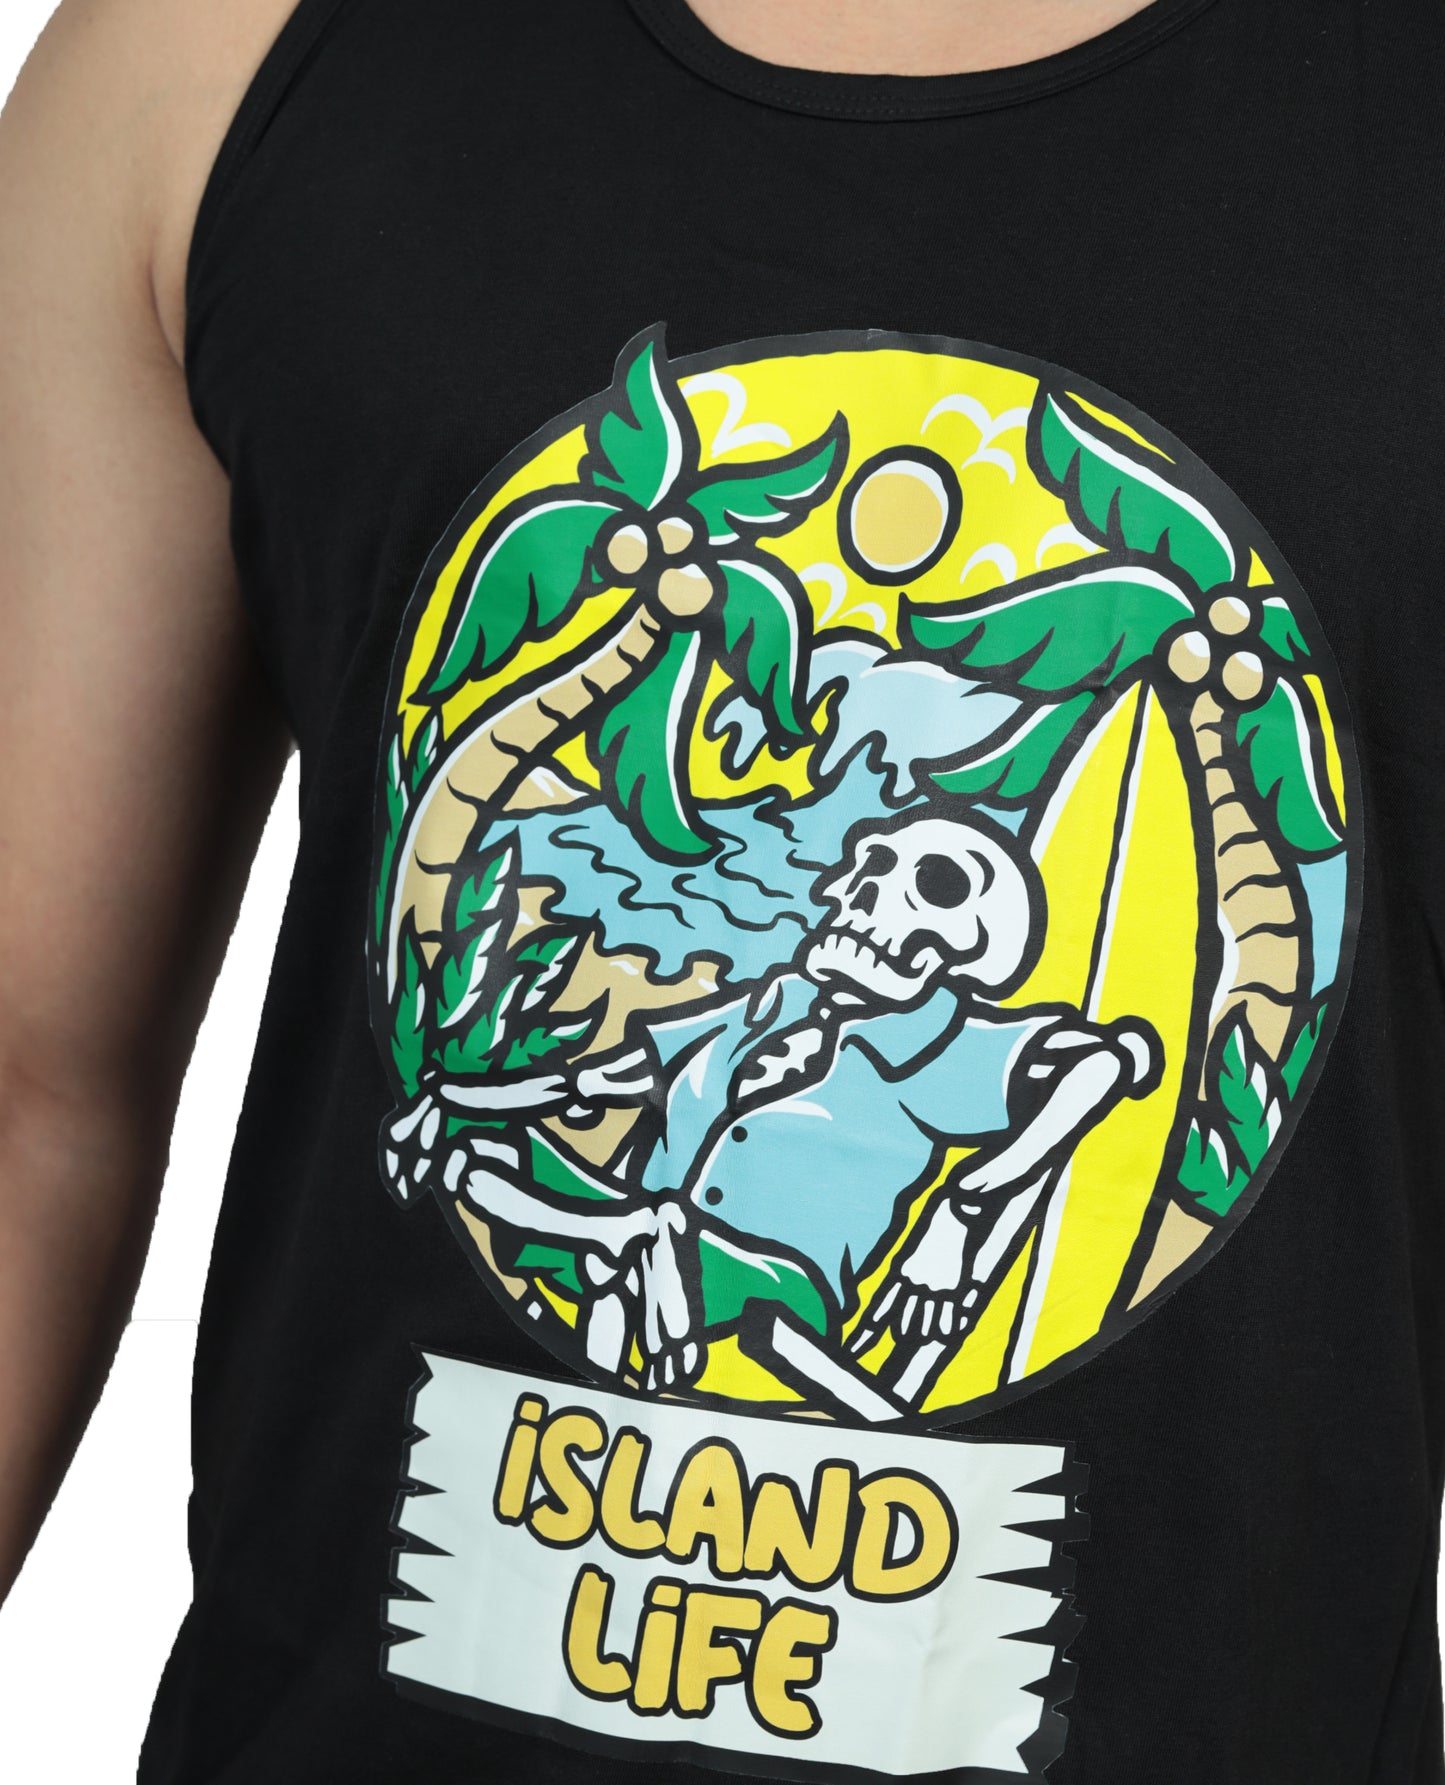 Island Life Vests Black Color For Men